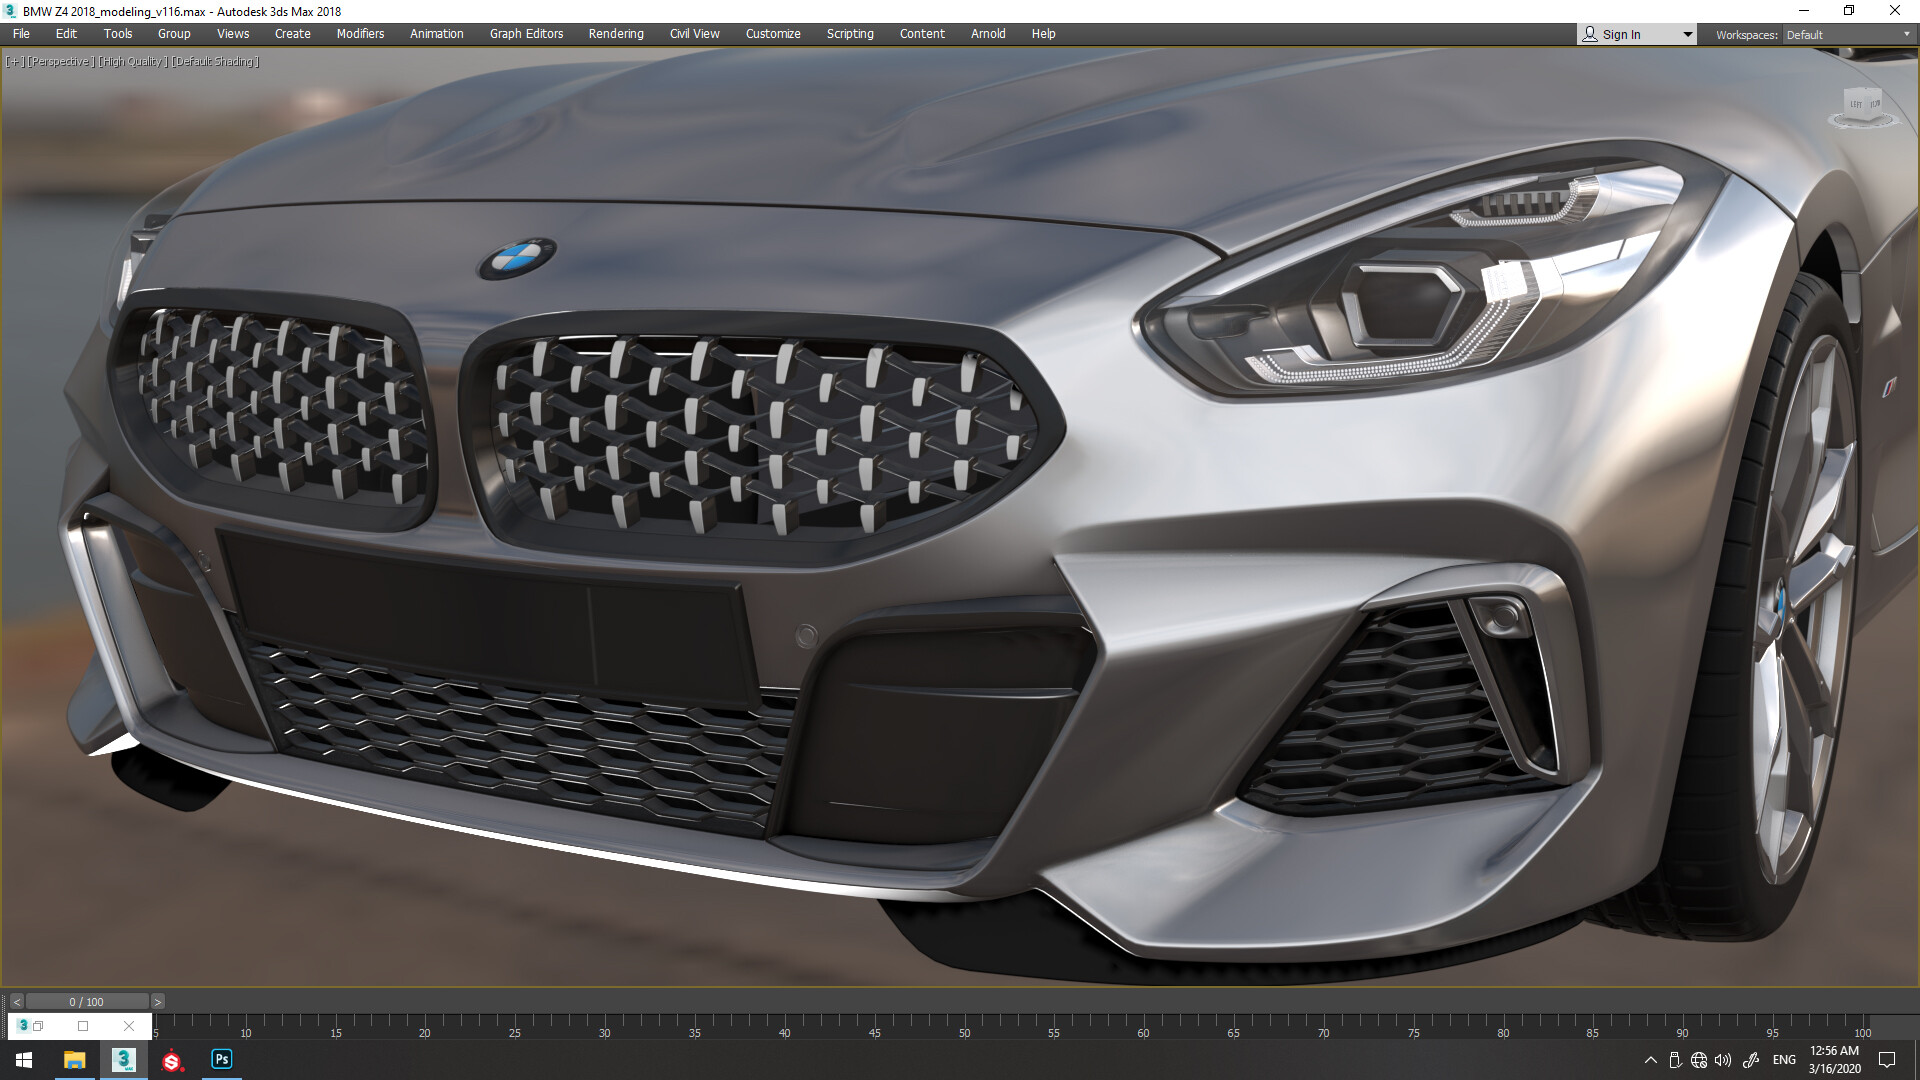 ArtStation - Work in Progress - BMW Z4